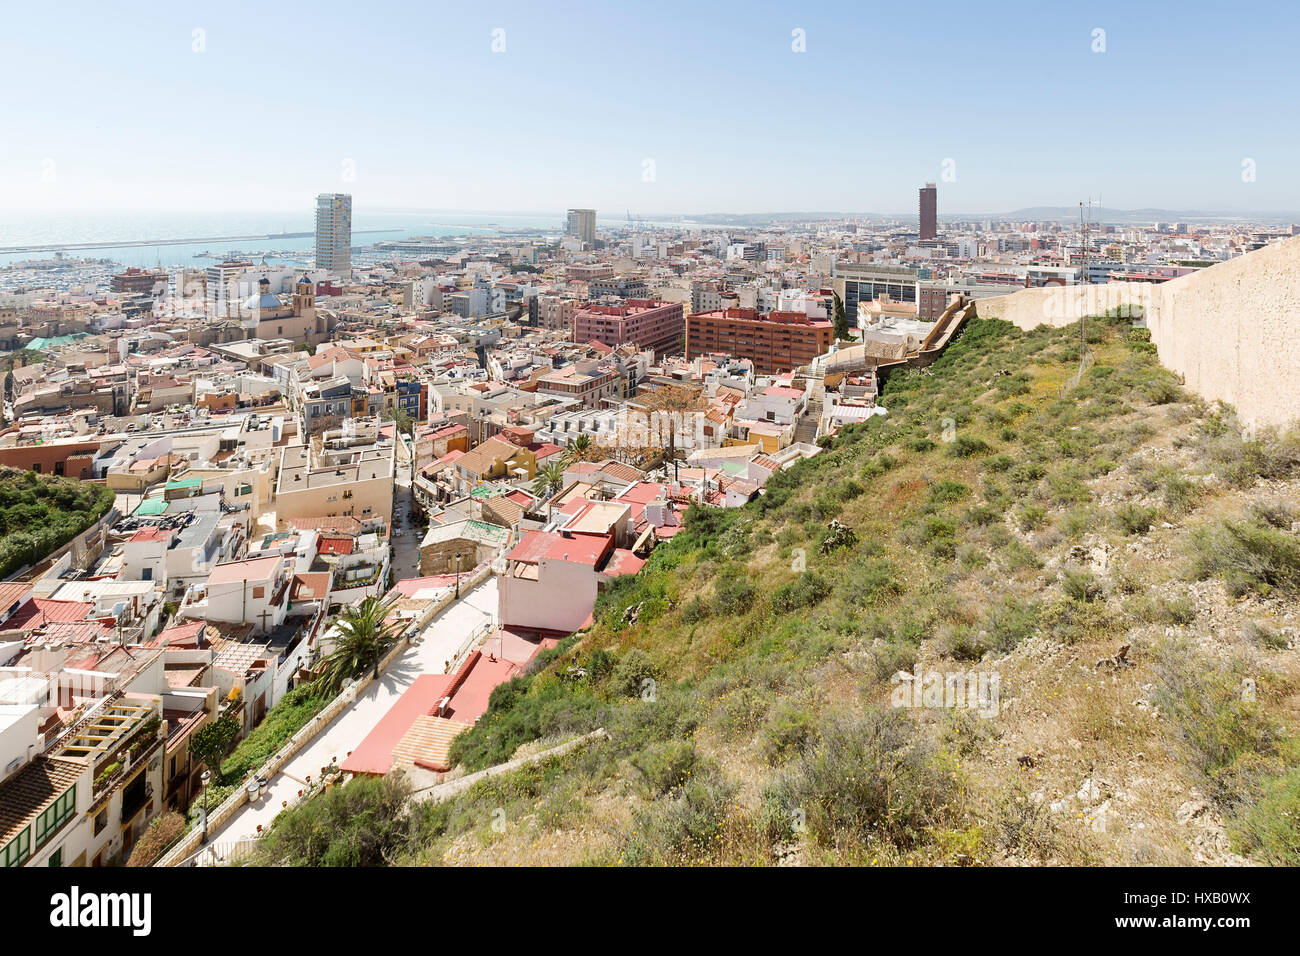 Ansicht von Alicante in Spanien, vom Berg des Castillo de Santa Barbara. Horizontalen Schuss. Aufnahmedatum auf 15. März 2017. Stockfoto